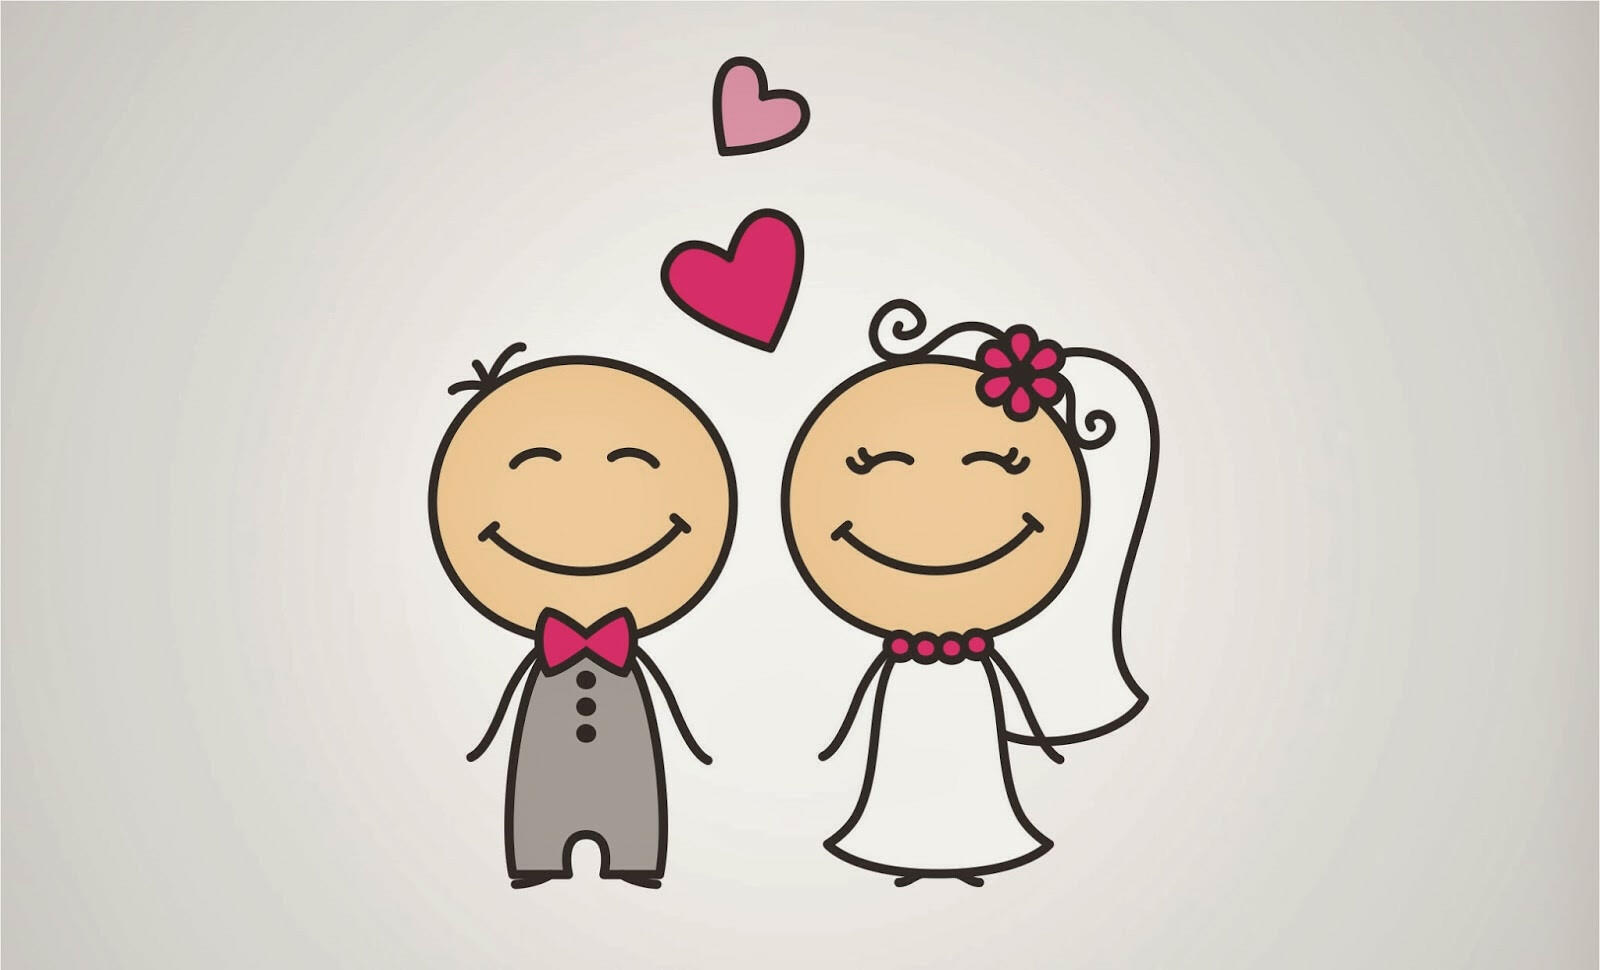  Luật hôn nhân và gia đình quy định nữ đủ 18 tuổi mới được kết hôn, điều đó thể hiện đặc điểm nào của pháp luật?